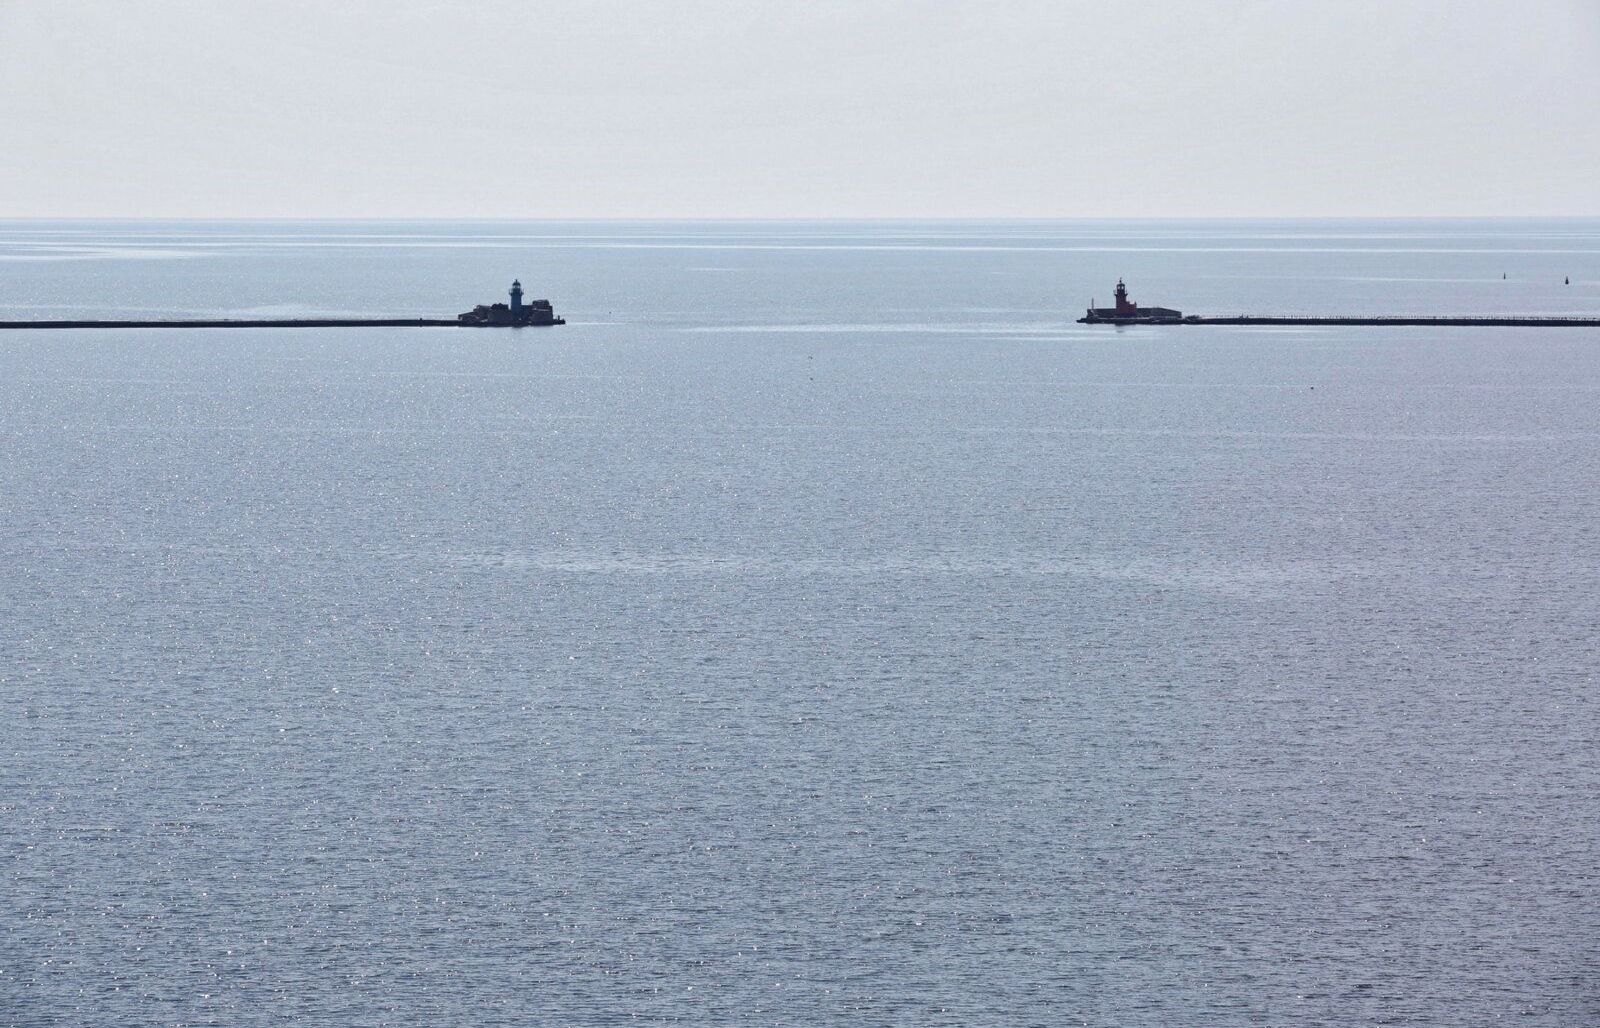 4 nước yêu cầu Nga đảm bảo quyền tiếp cận các cảng của Ukraine ở Biển Azov